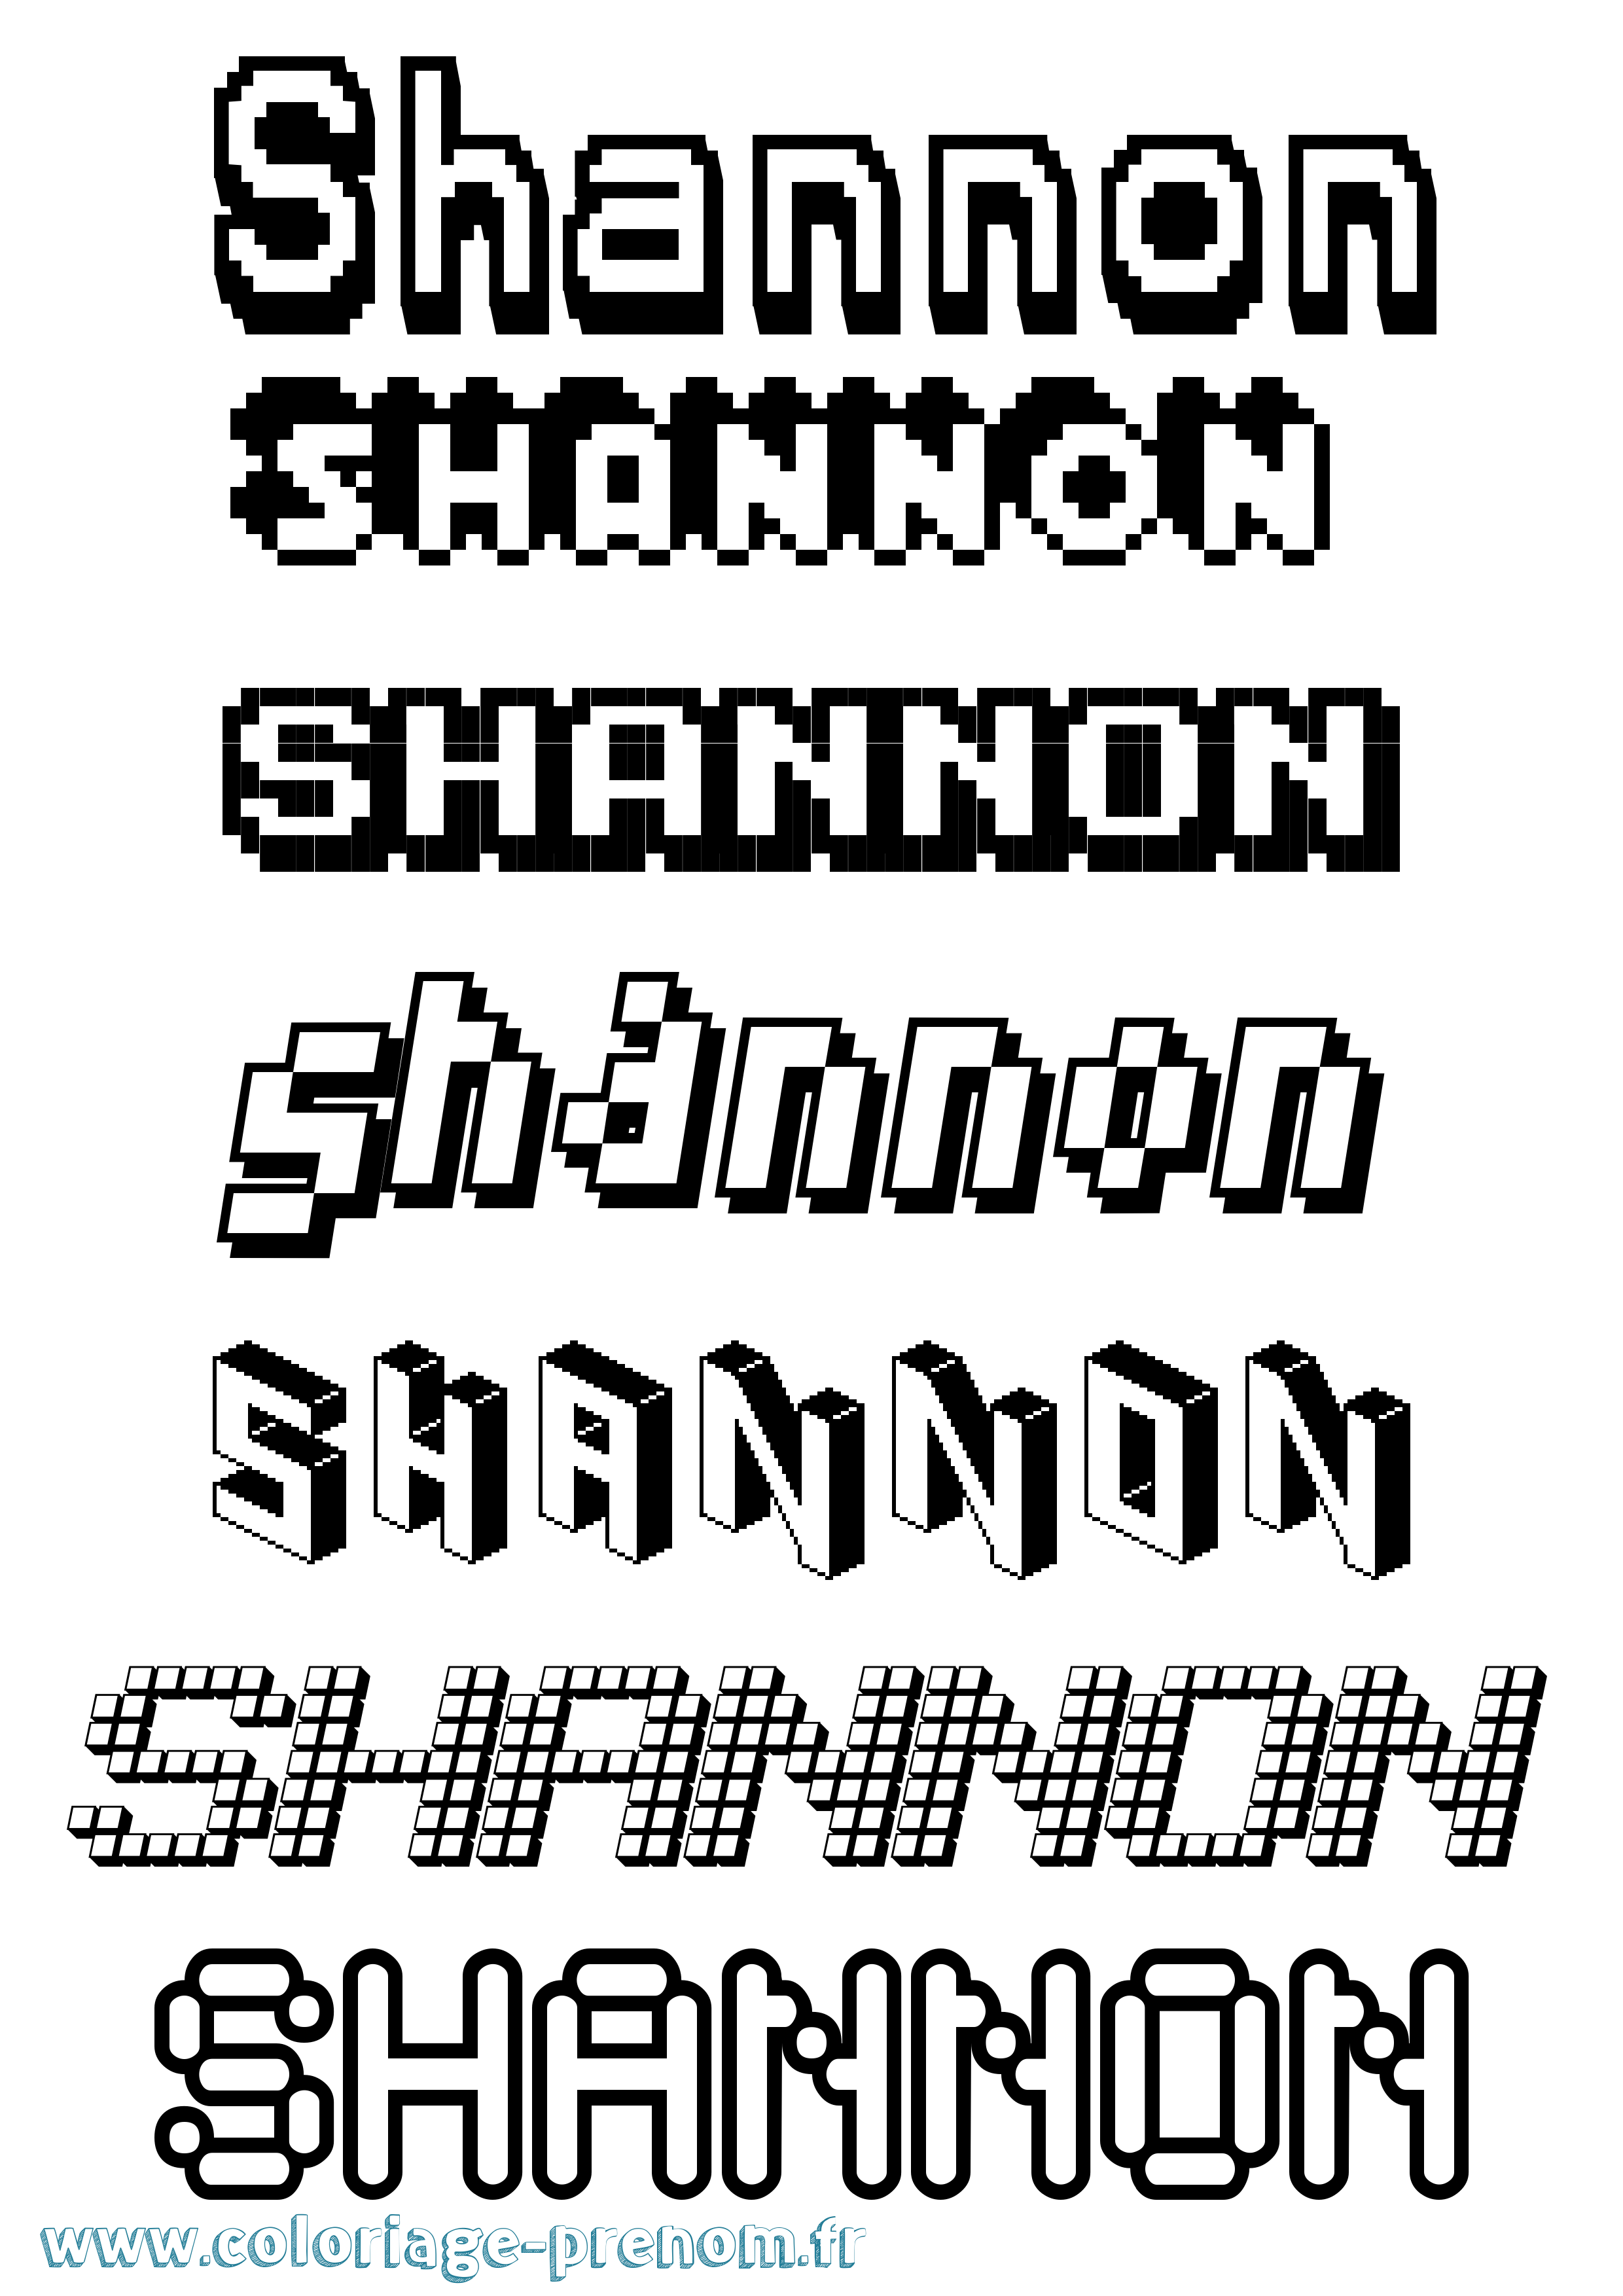 Coloriage prénom Shannon Pixel